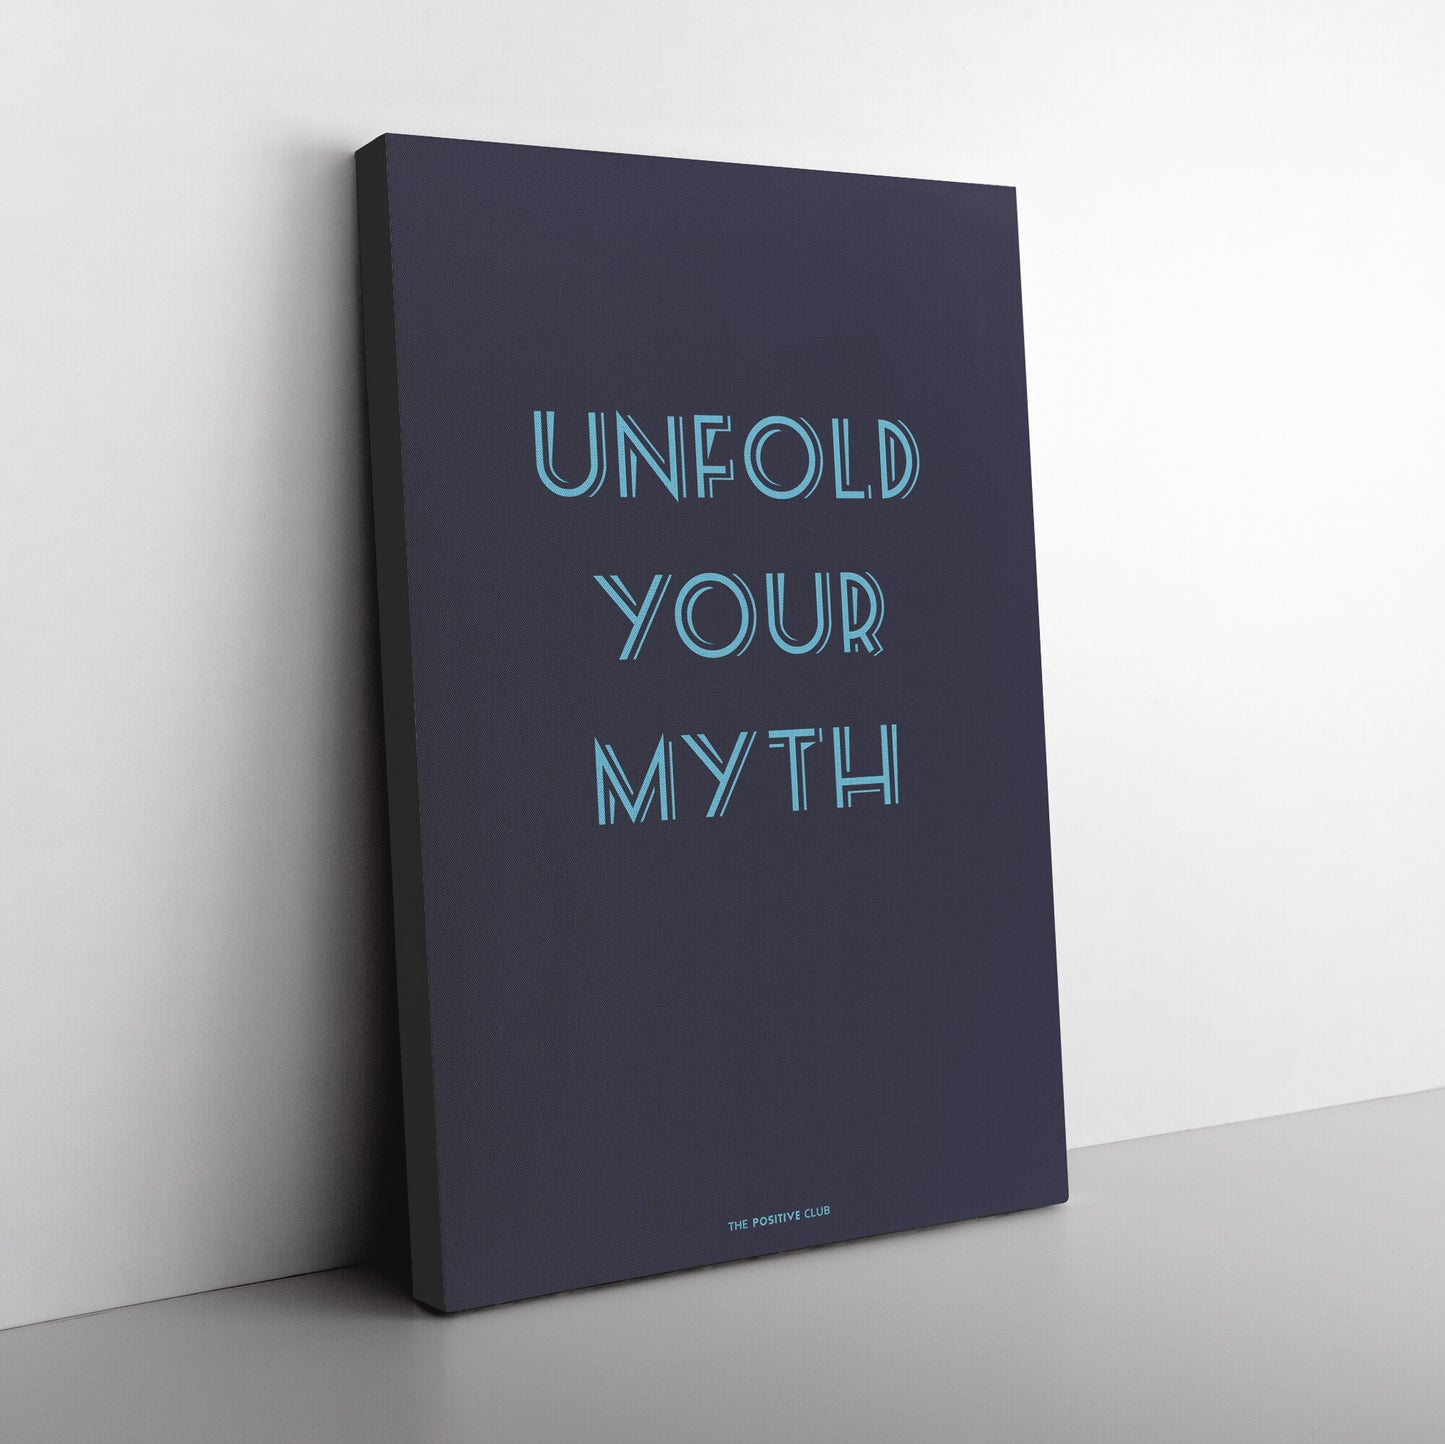 UNFOLD YOUR MYTH